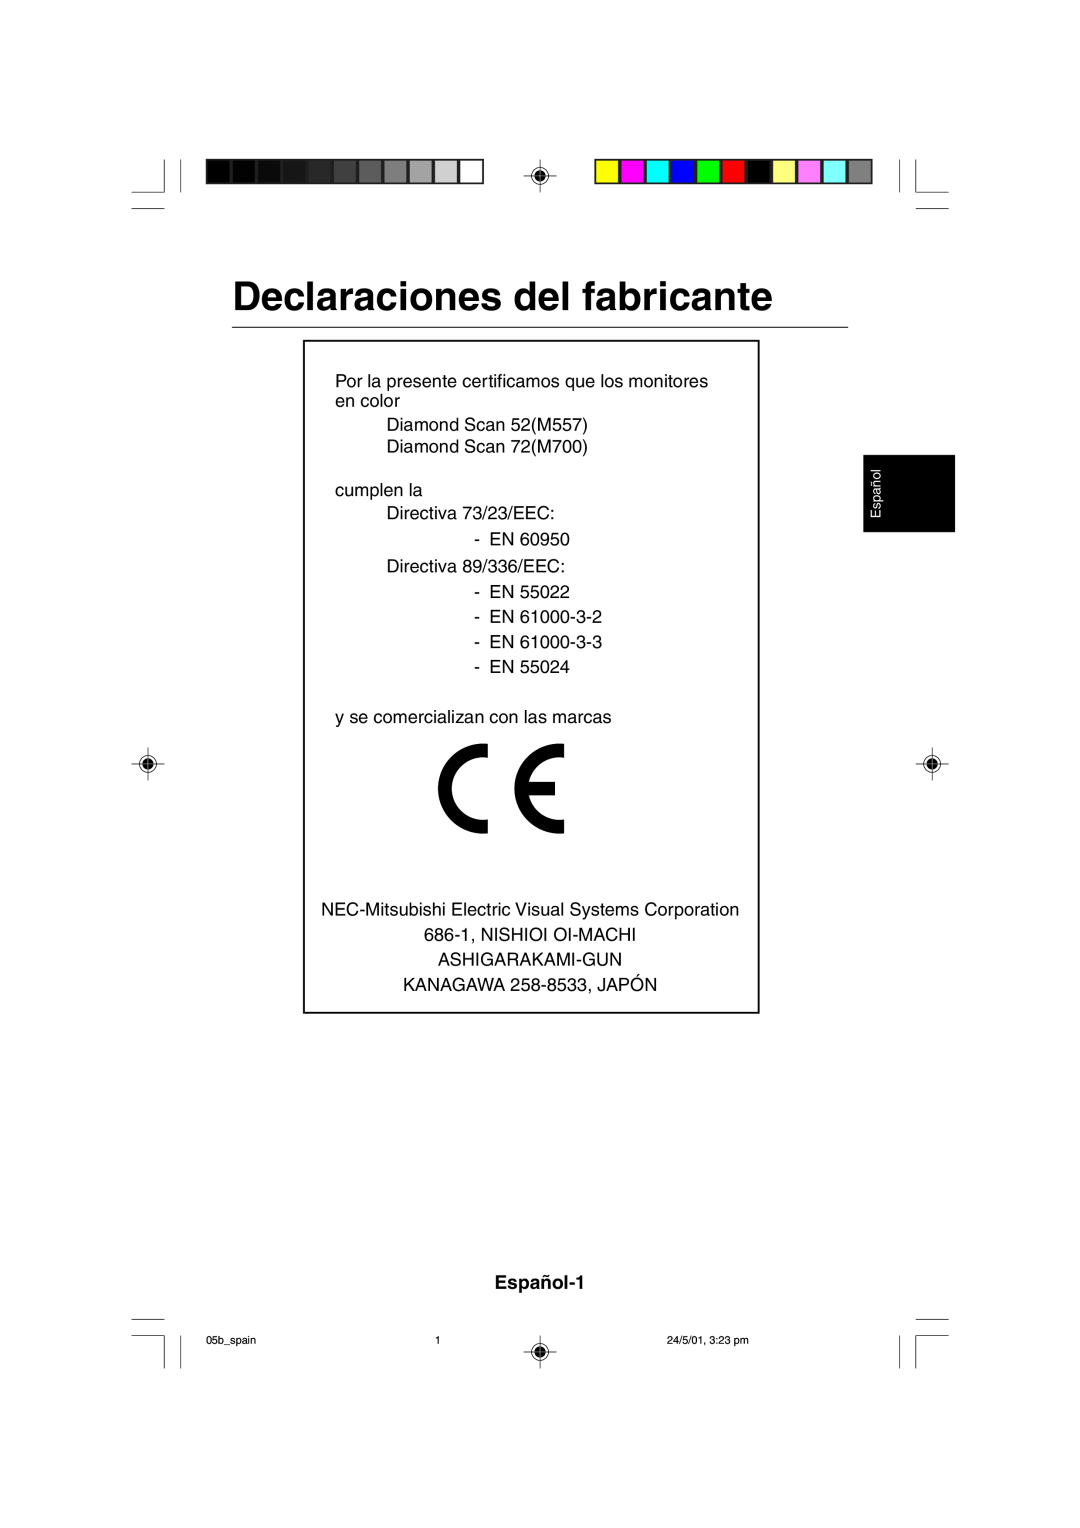 Mitsubishi Electronics M557 user manual Declaraciones del fabricante, Español-1, 05bspain, 24/5/01, 323 pm 